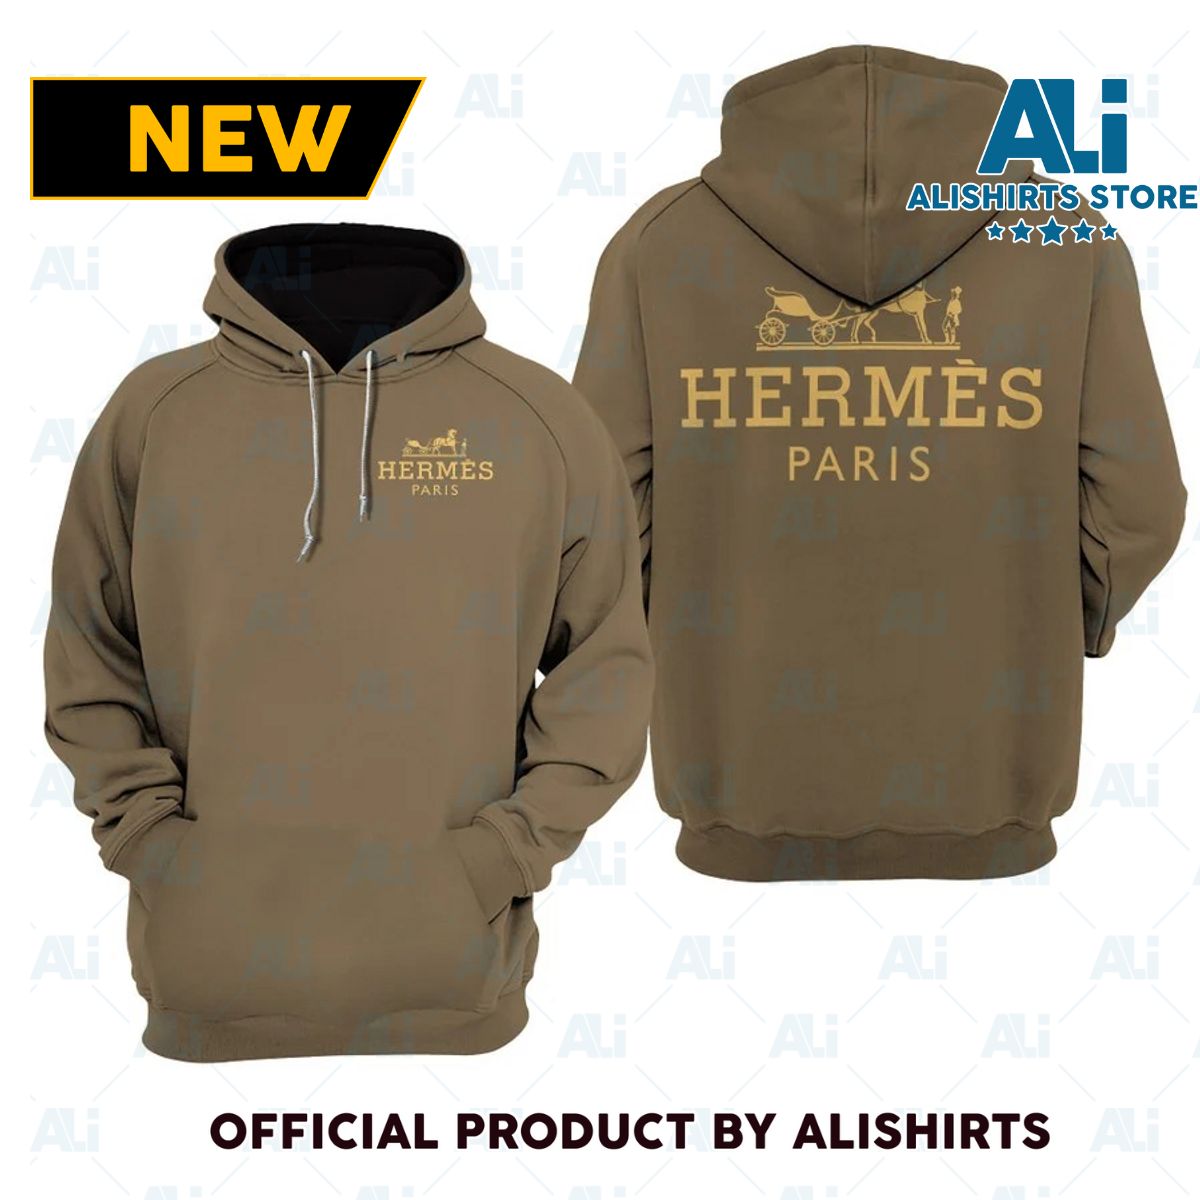 Hermes Paris Hoodie Luxury Brand Outfits